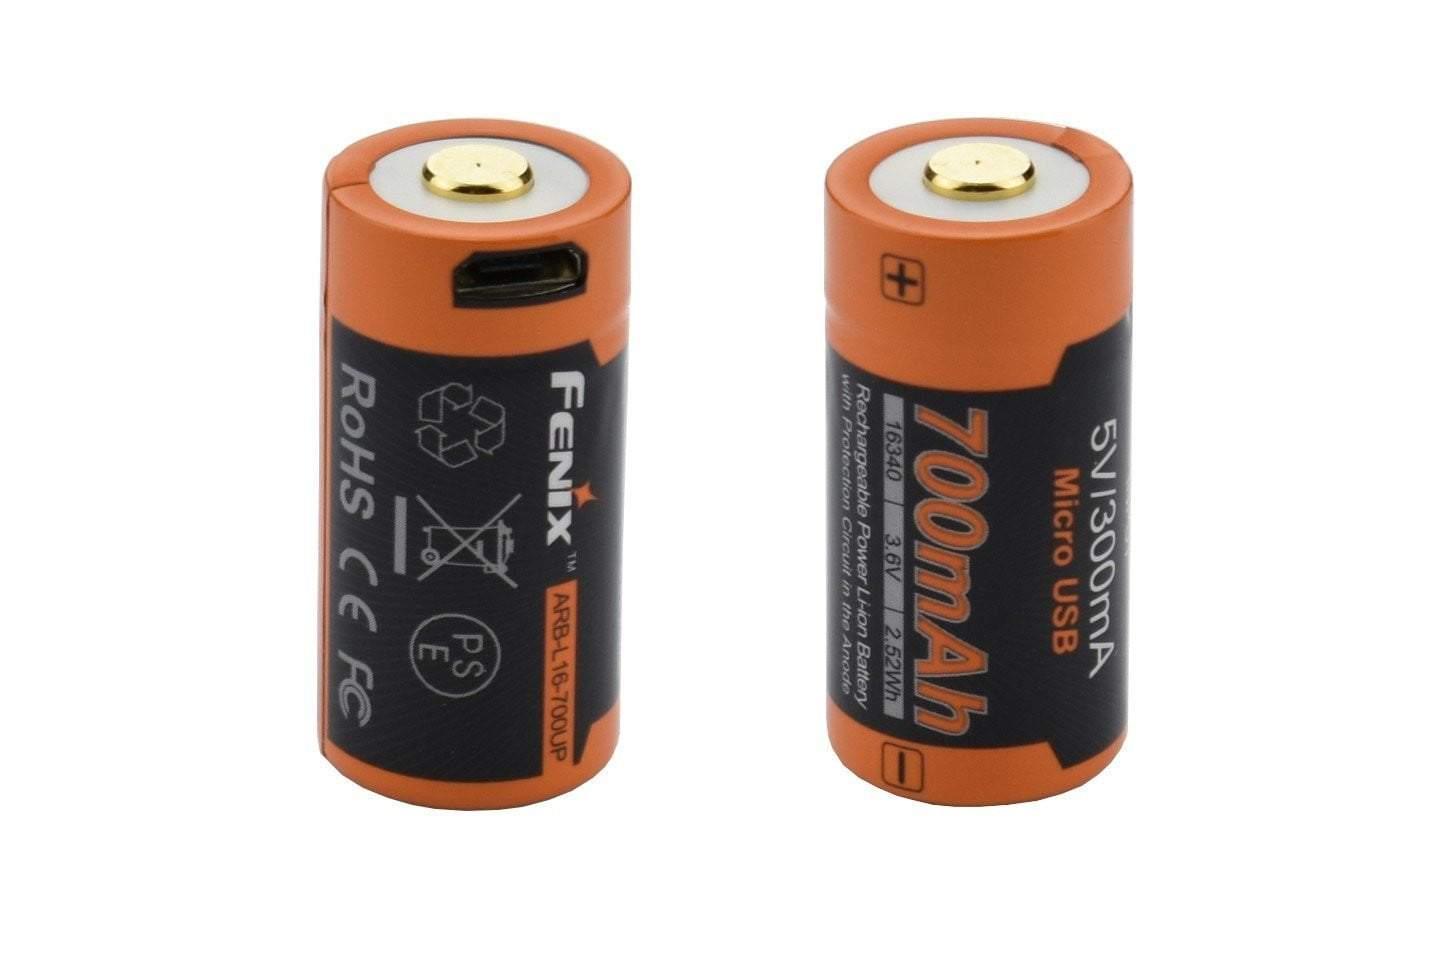 ARB-L16-700UP - Batterie 16340 Li-ion 700mAh Micro USB Site Officiel FENIX® - Votre boutique en ligne Fenix®